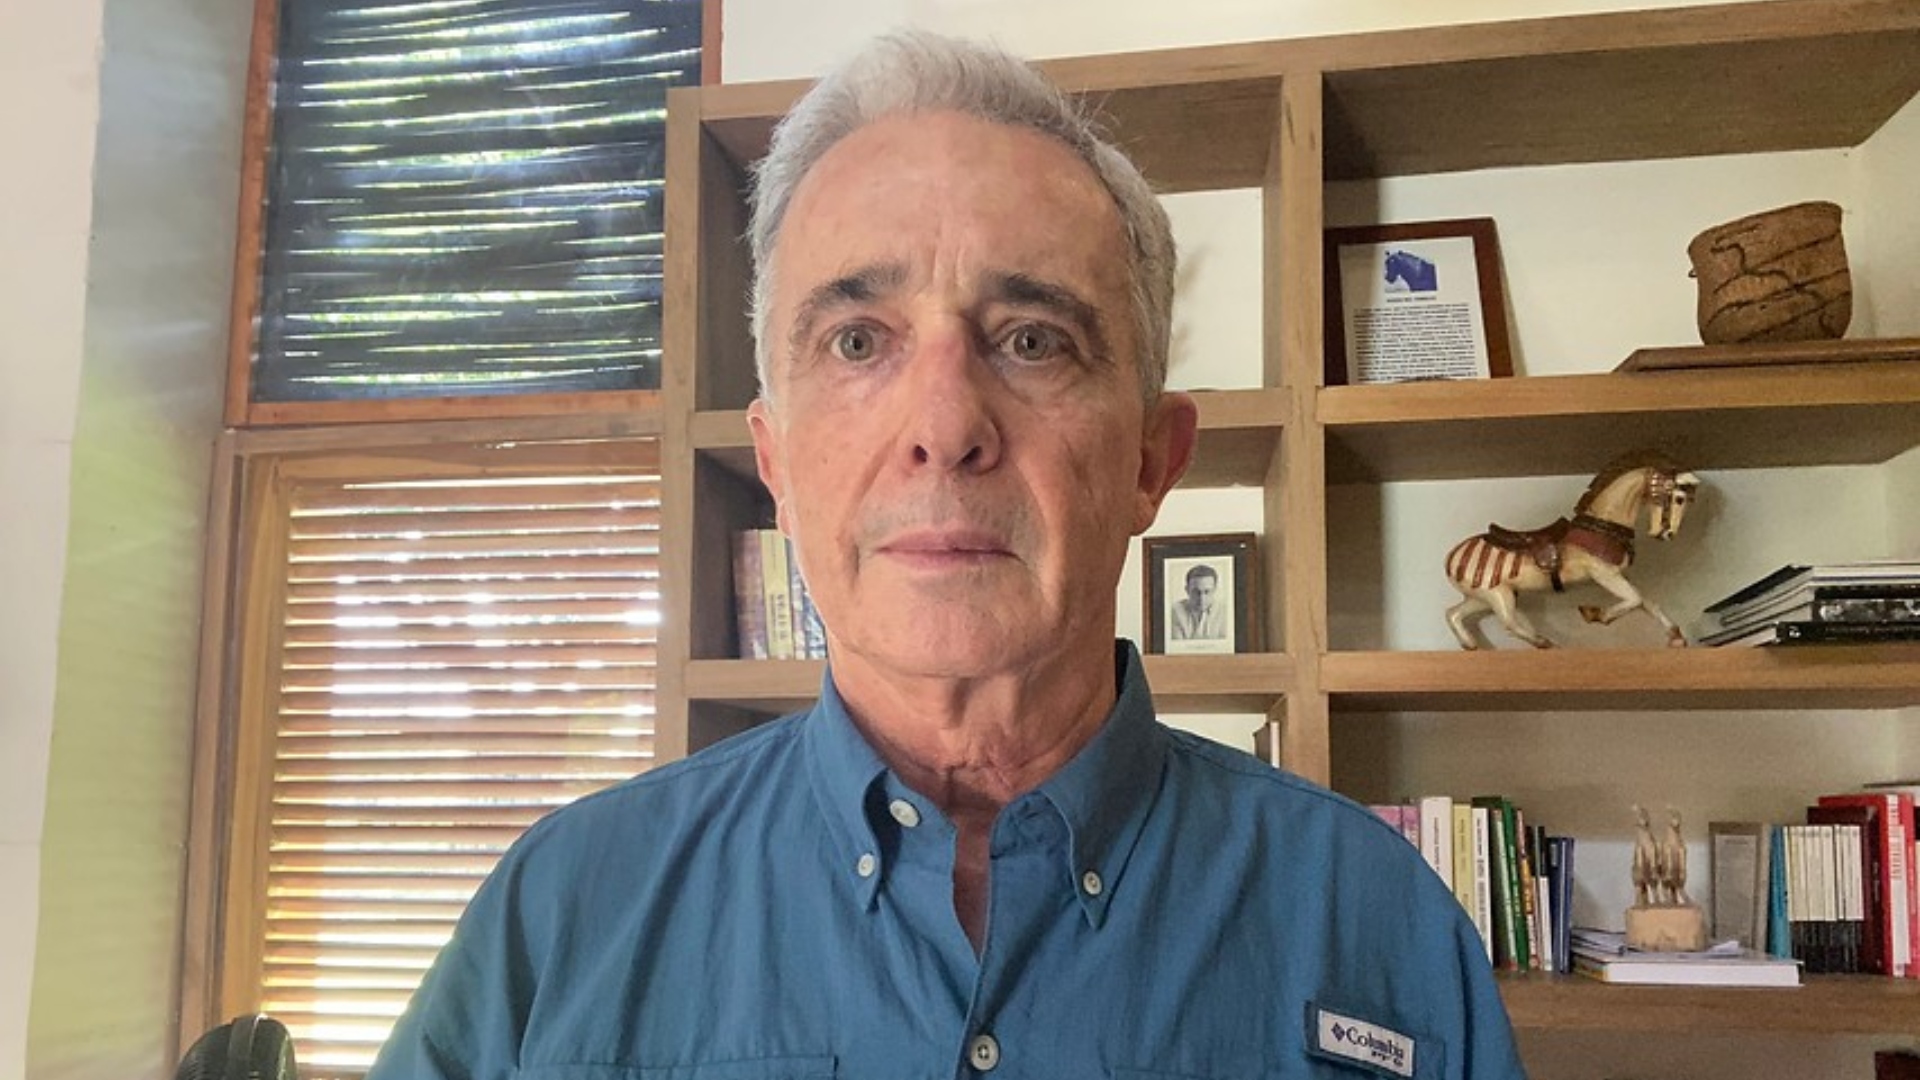 Expresidente Uribe no tuvo relación con presunta manipulación de testigos: Fiscalía 